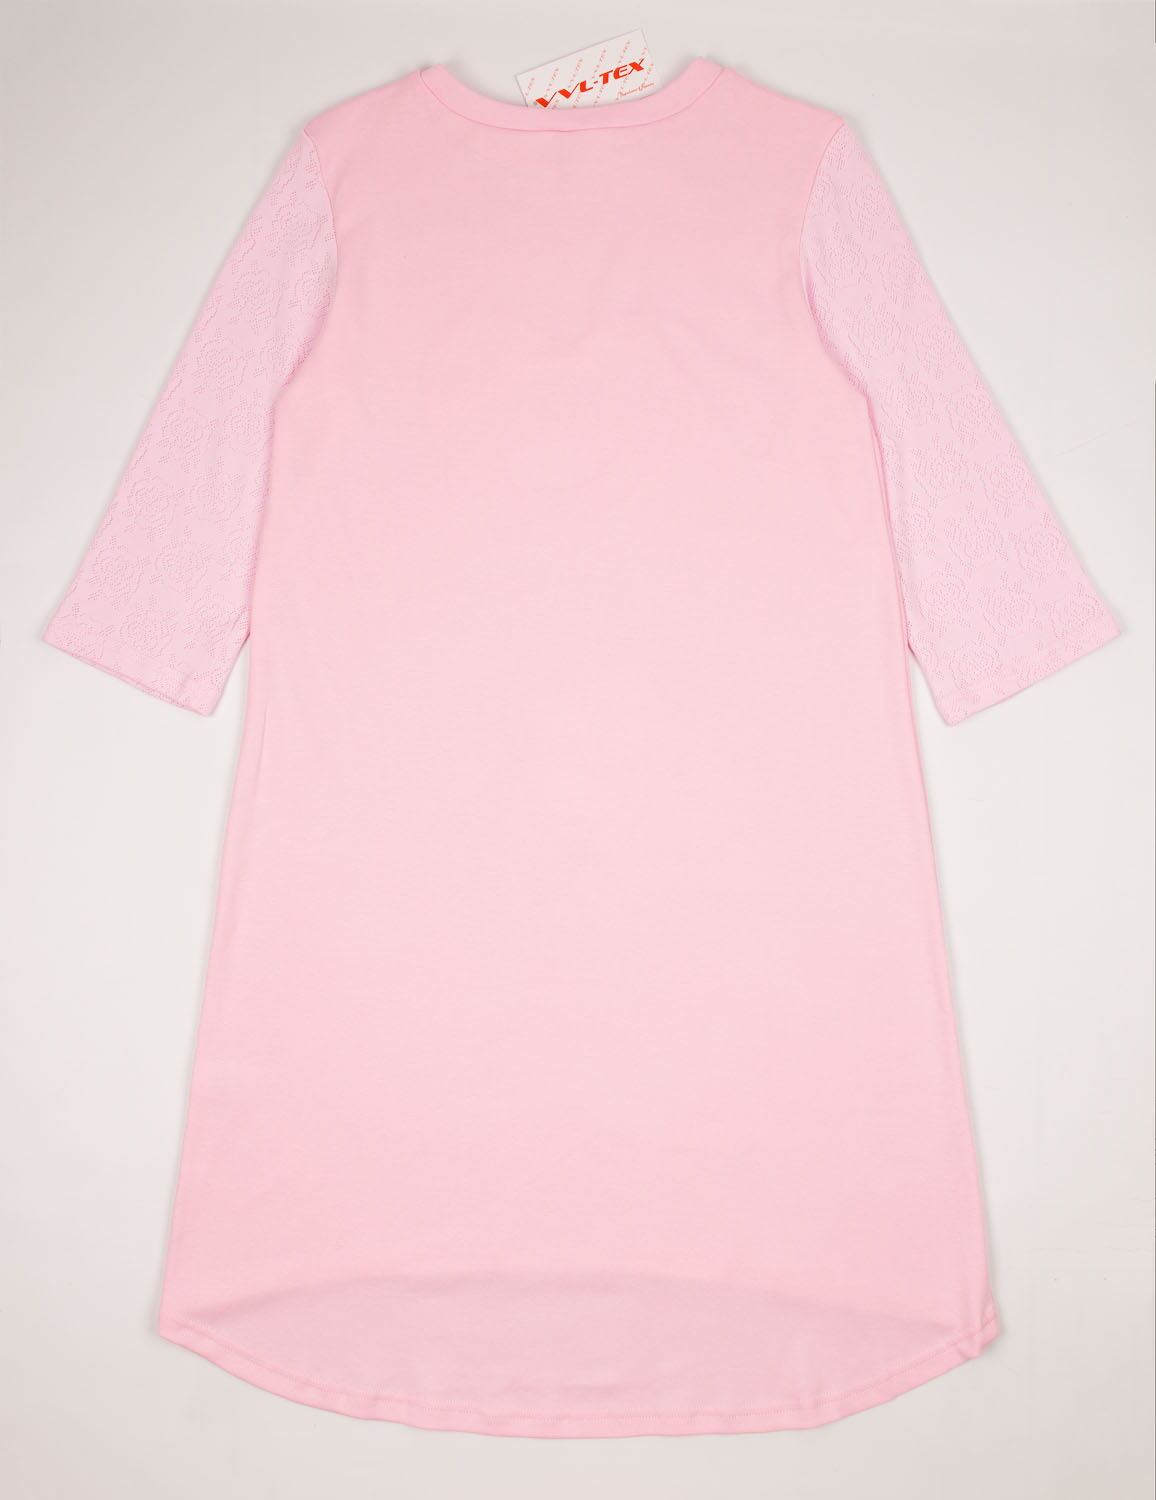 Сорочка женская VVL Сердце розовая 356 - размеры